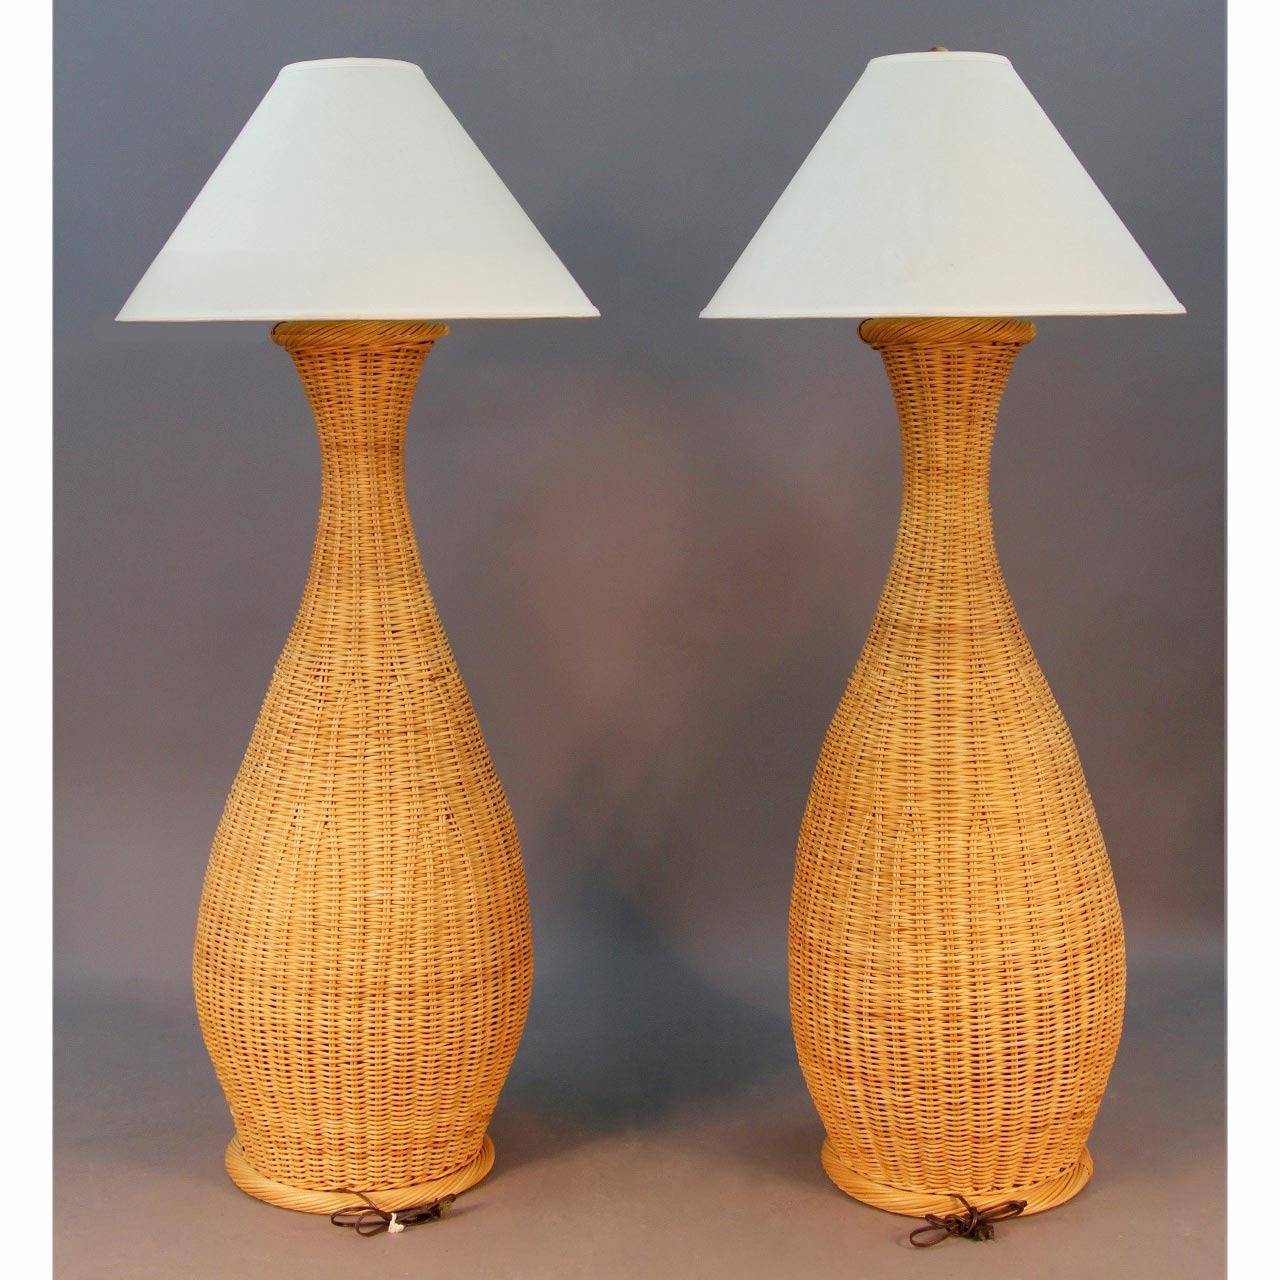 Pair of Vintage 1970s Wicker Floor Lamps.